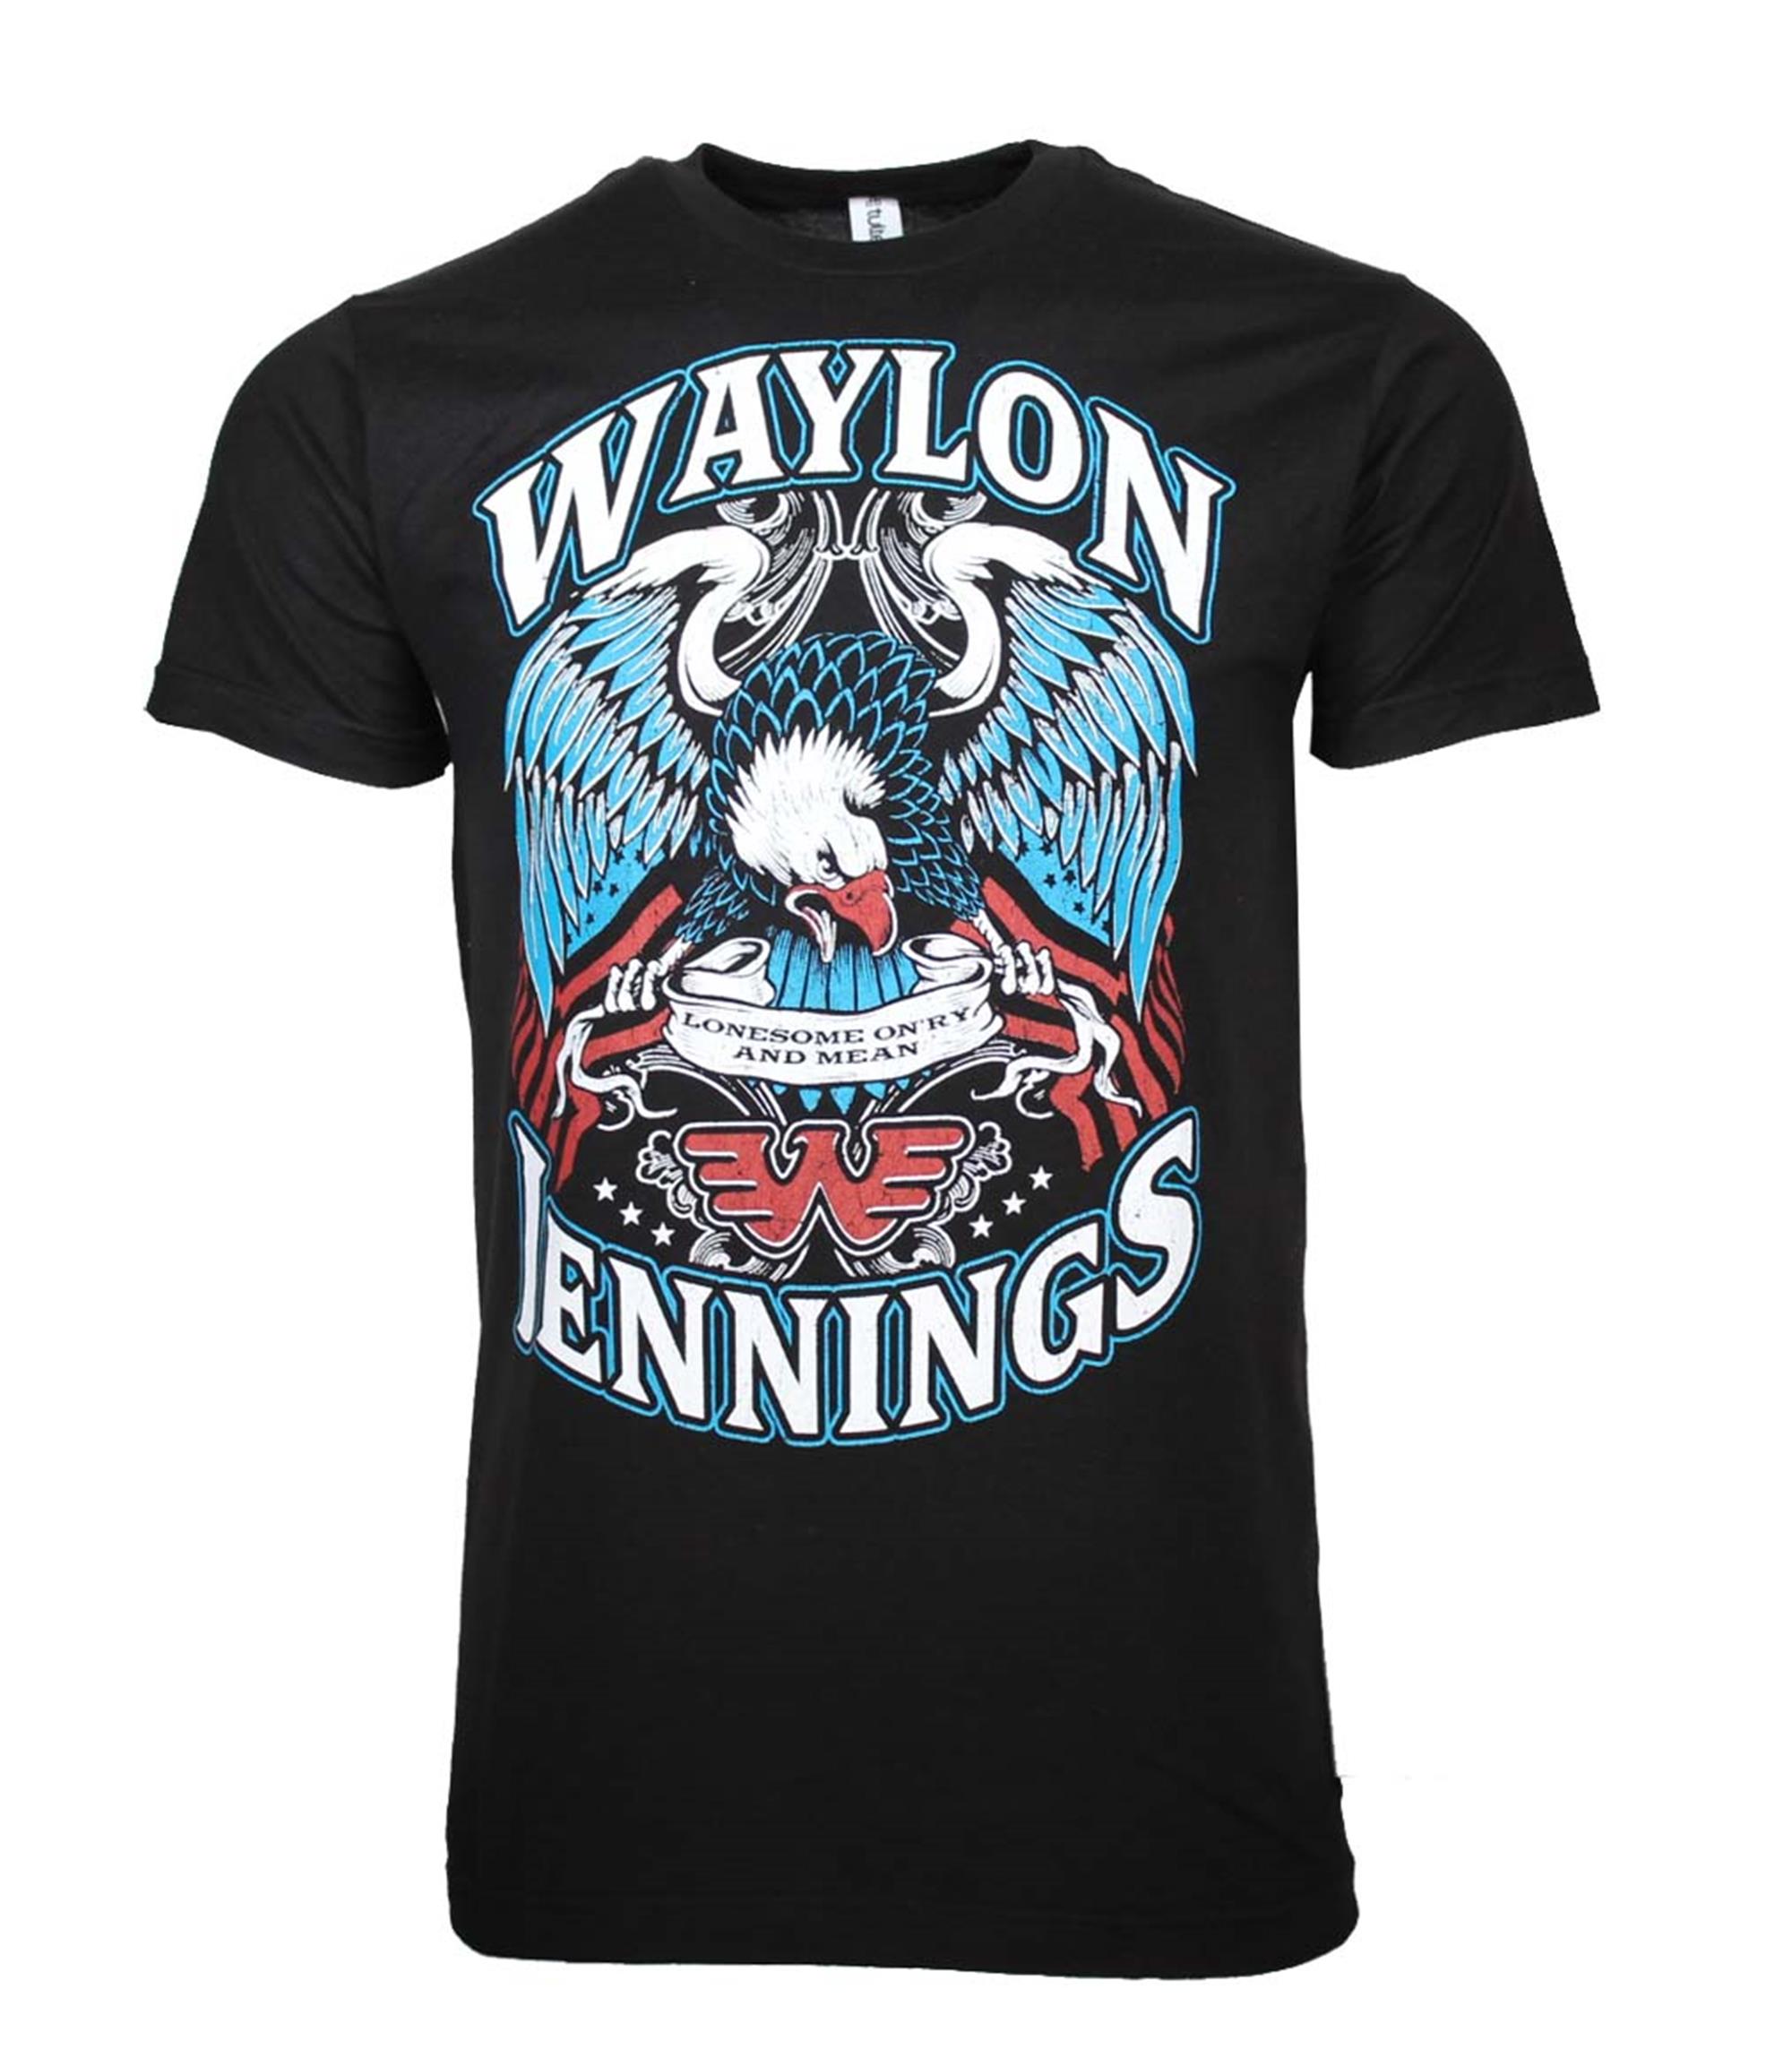 Waylon Jennings Lonesome T-Shirt